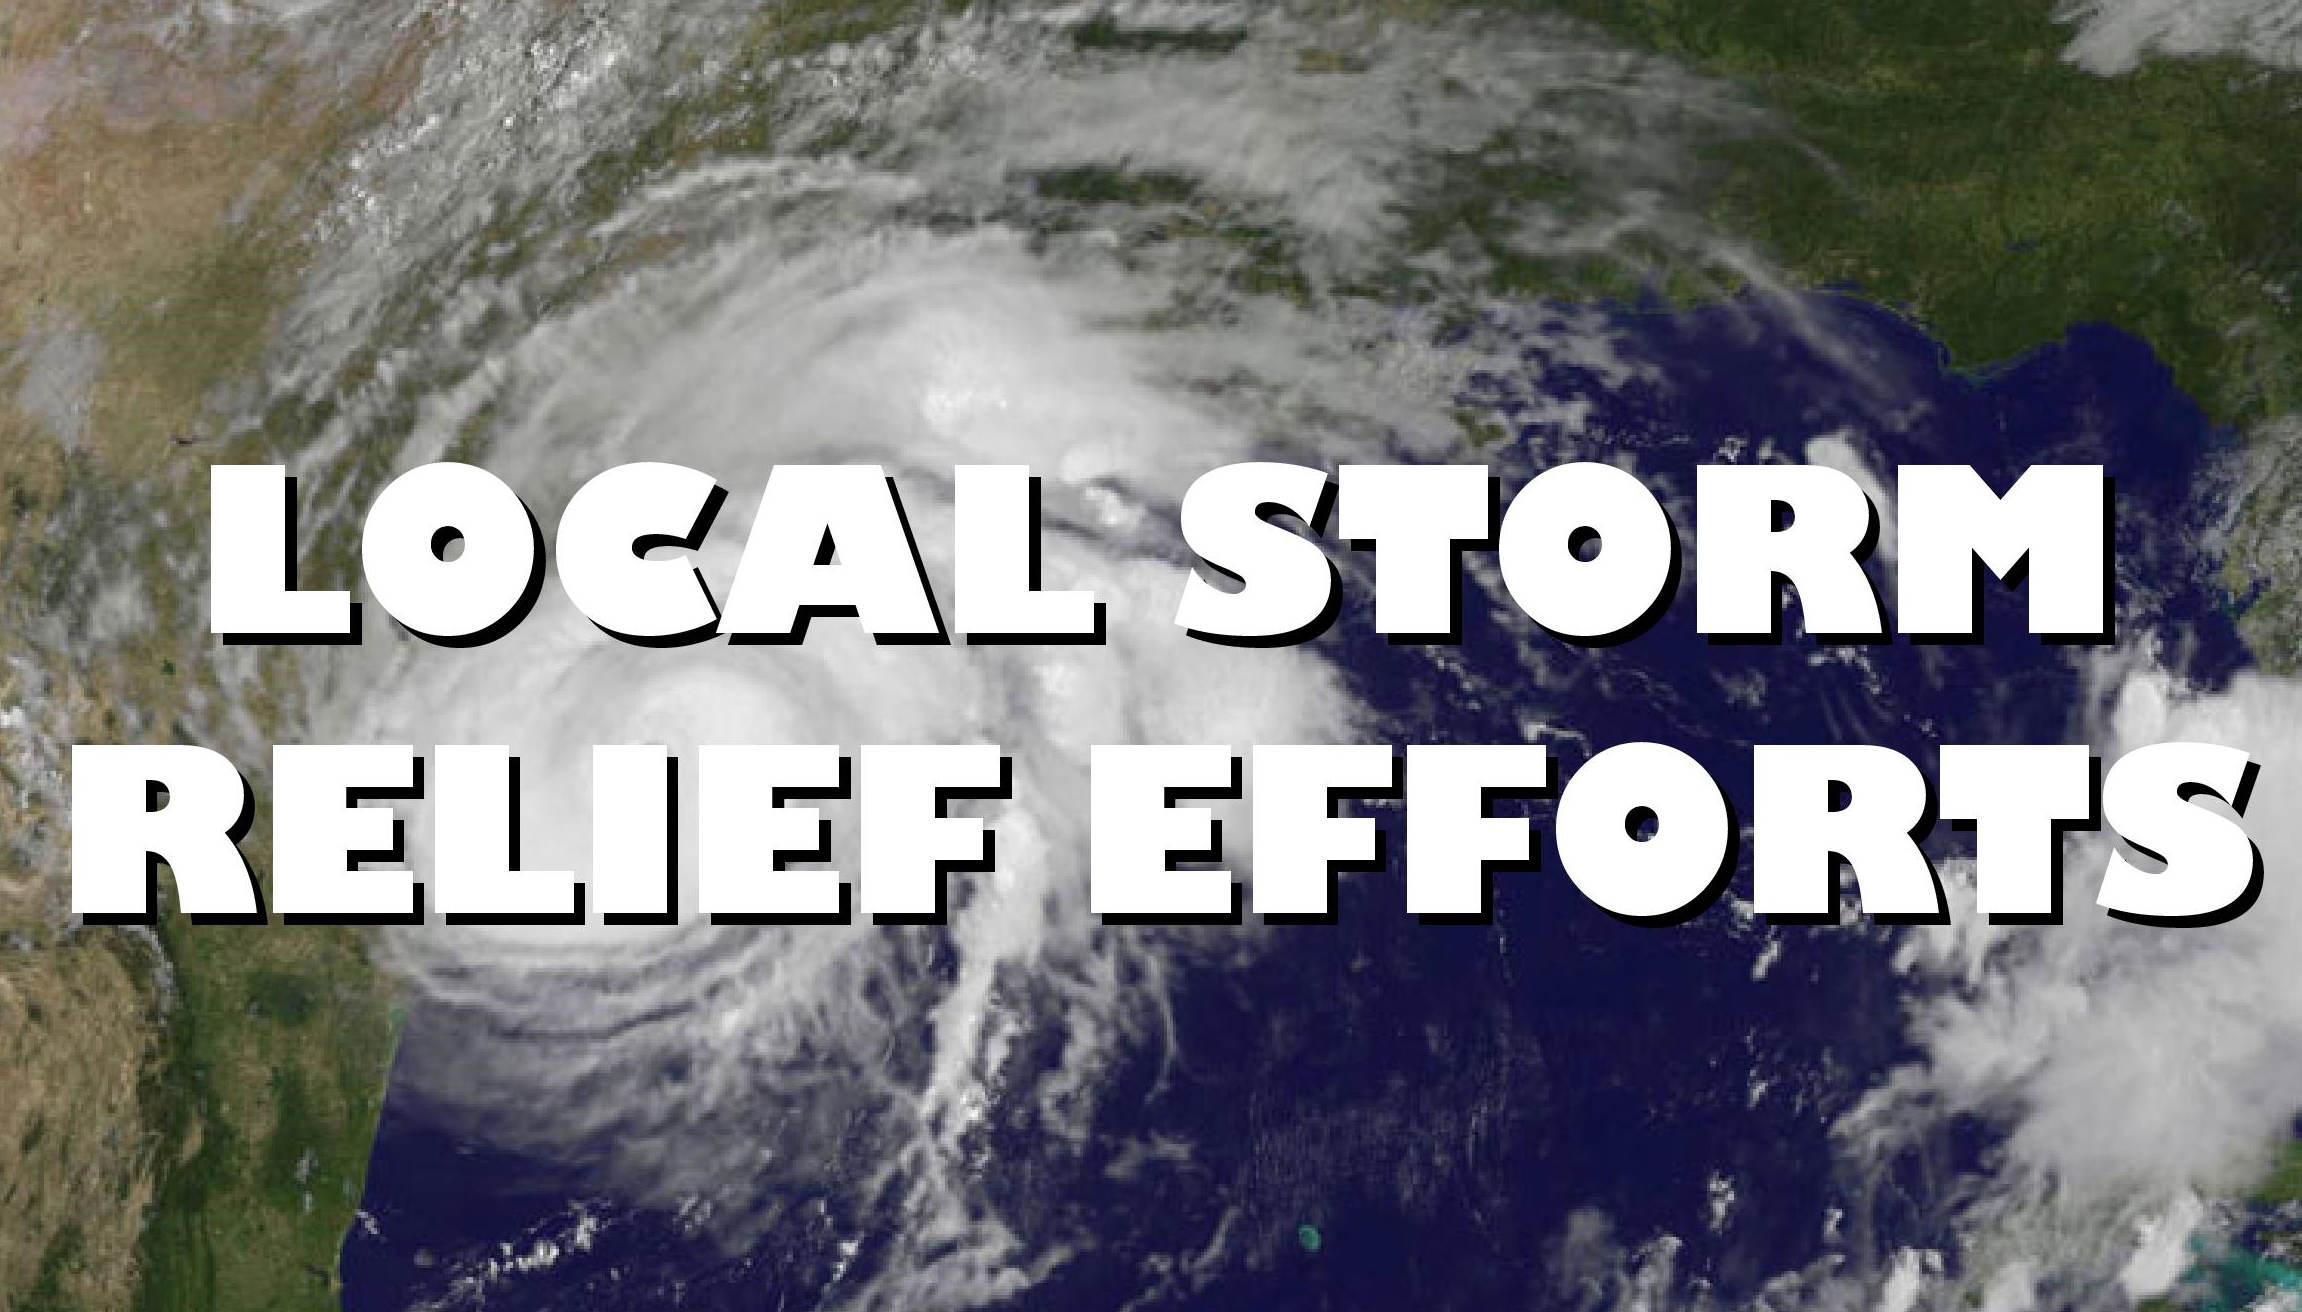 Local Storm Relief Efforts Underway